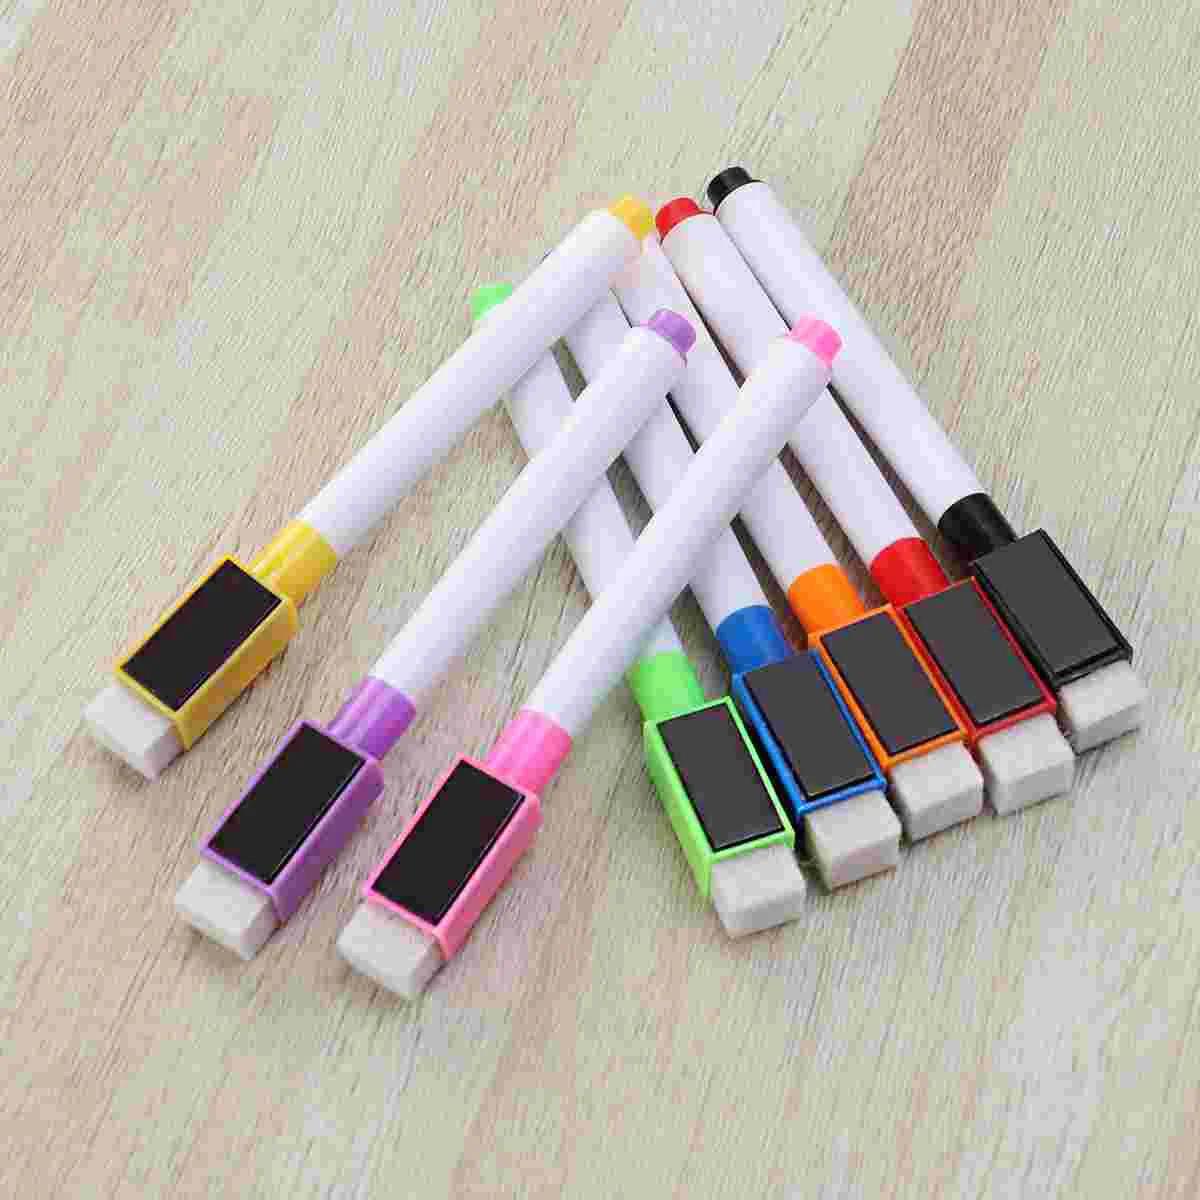 마그네틱 캡과 지우개가 있는 다채로운 마그네틱 마커, 다양한 색상, 학용품, 어린이 그림 펜 문구, 8 개